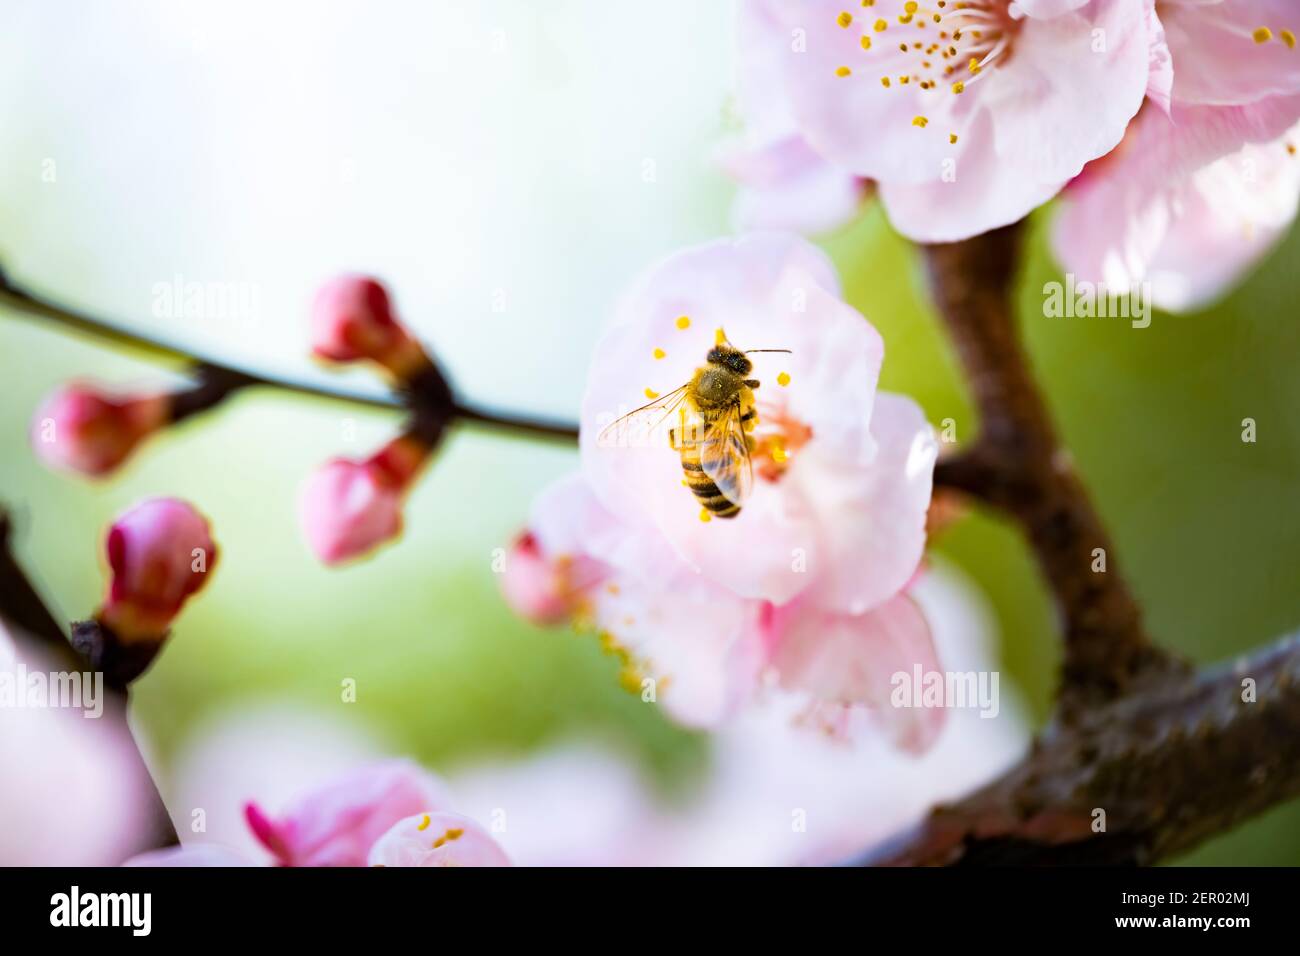 (Selektiver Fokus) Nahaufnahme einer Biene, die während der Blütezeit Nektar von einigen Kirschblüten sammelt. Natürlicher Hintergrund mit Witz Stockfoto